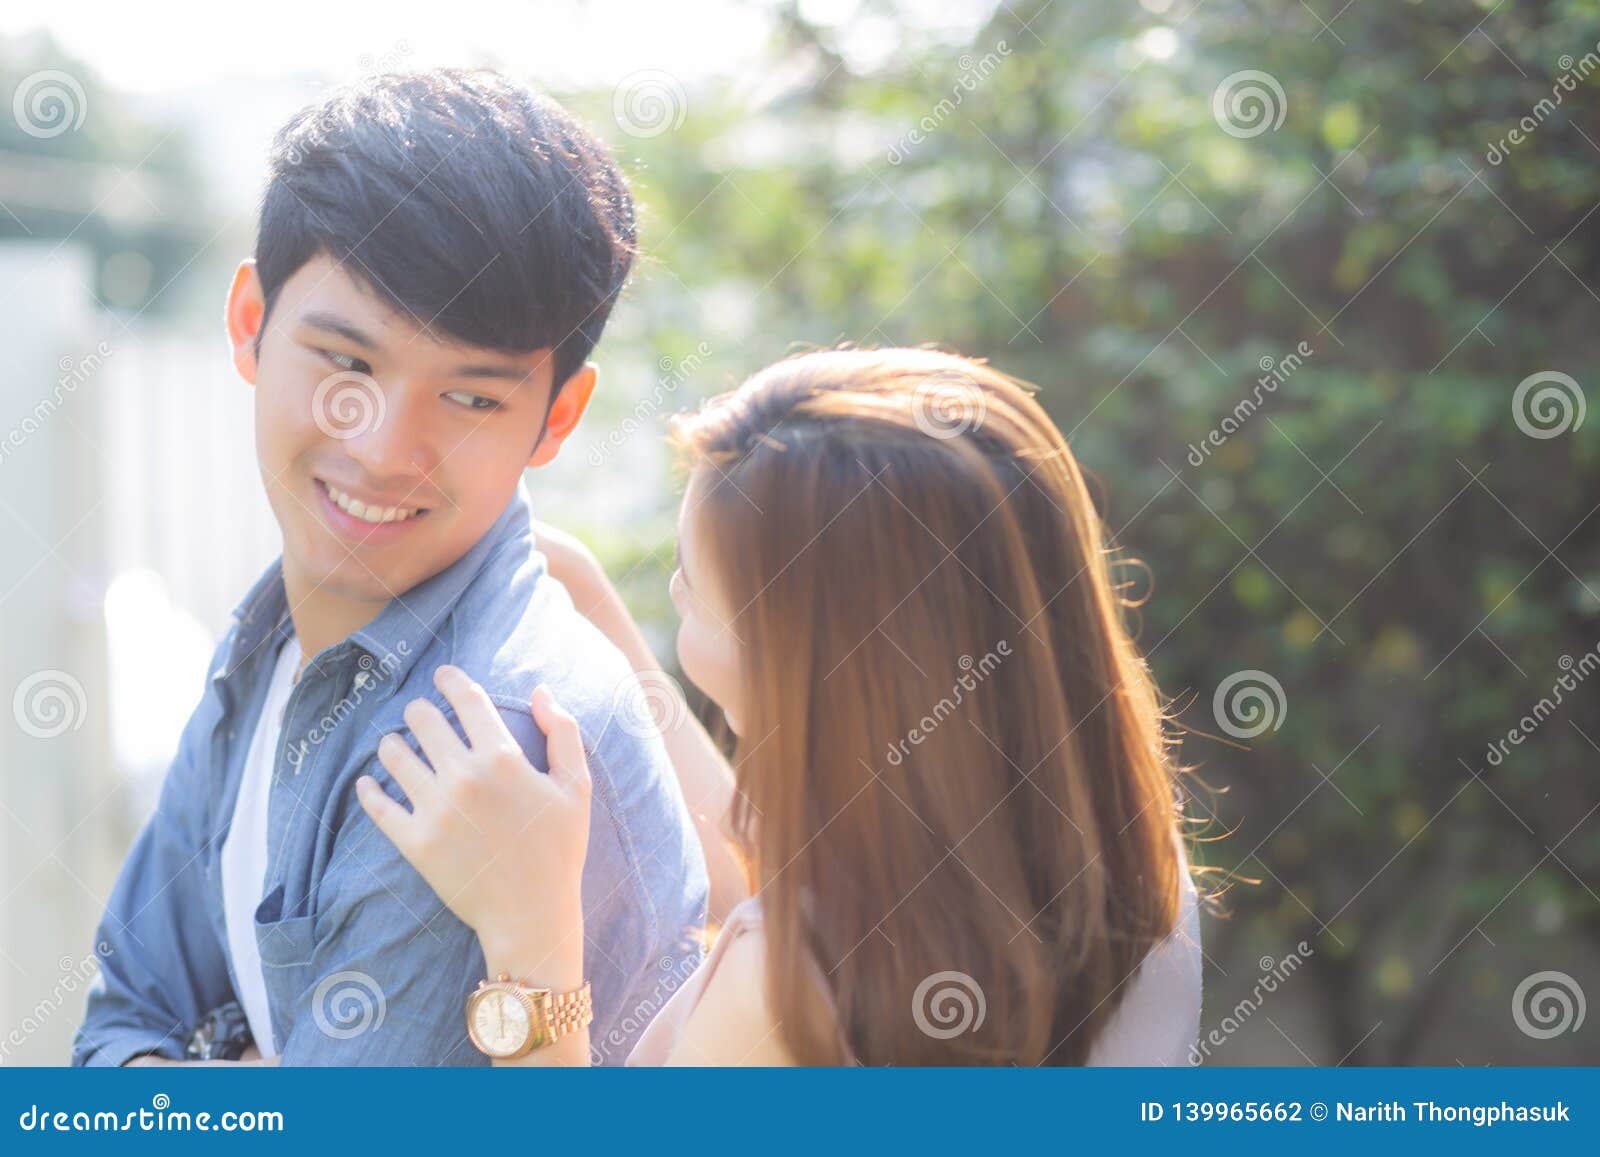 Asian Dating Has Beautiful